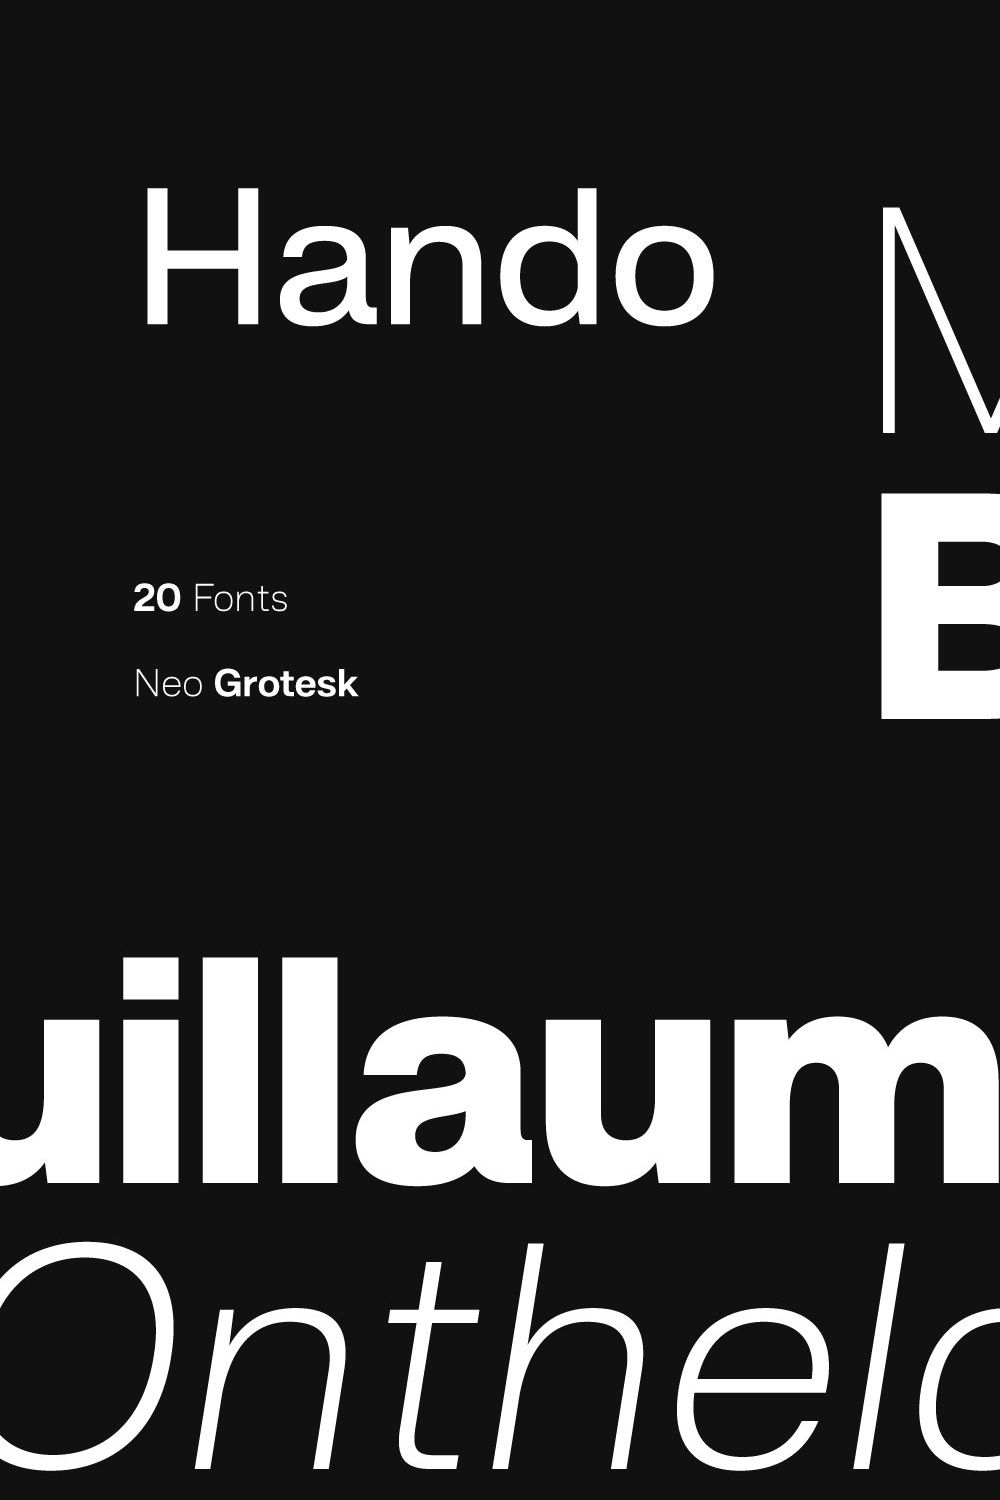 Hando; 20 Fonts of Sans Serif pinterest preview image.